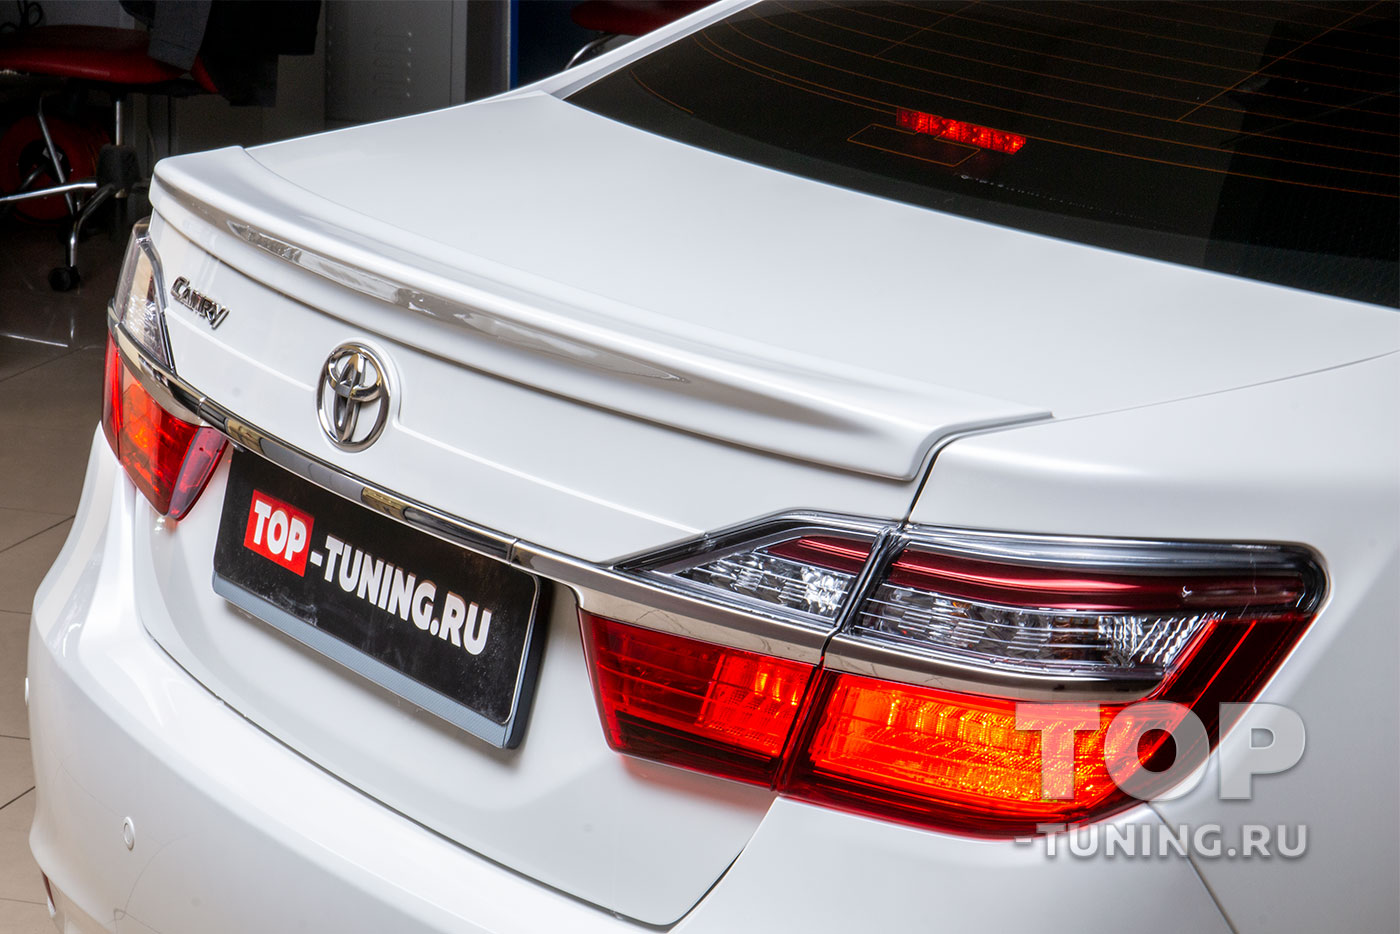 Полная шумоизоляция Toyota Camry V50 г. за 1 день в Москве